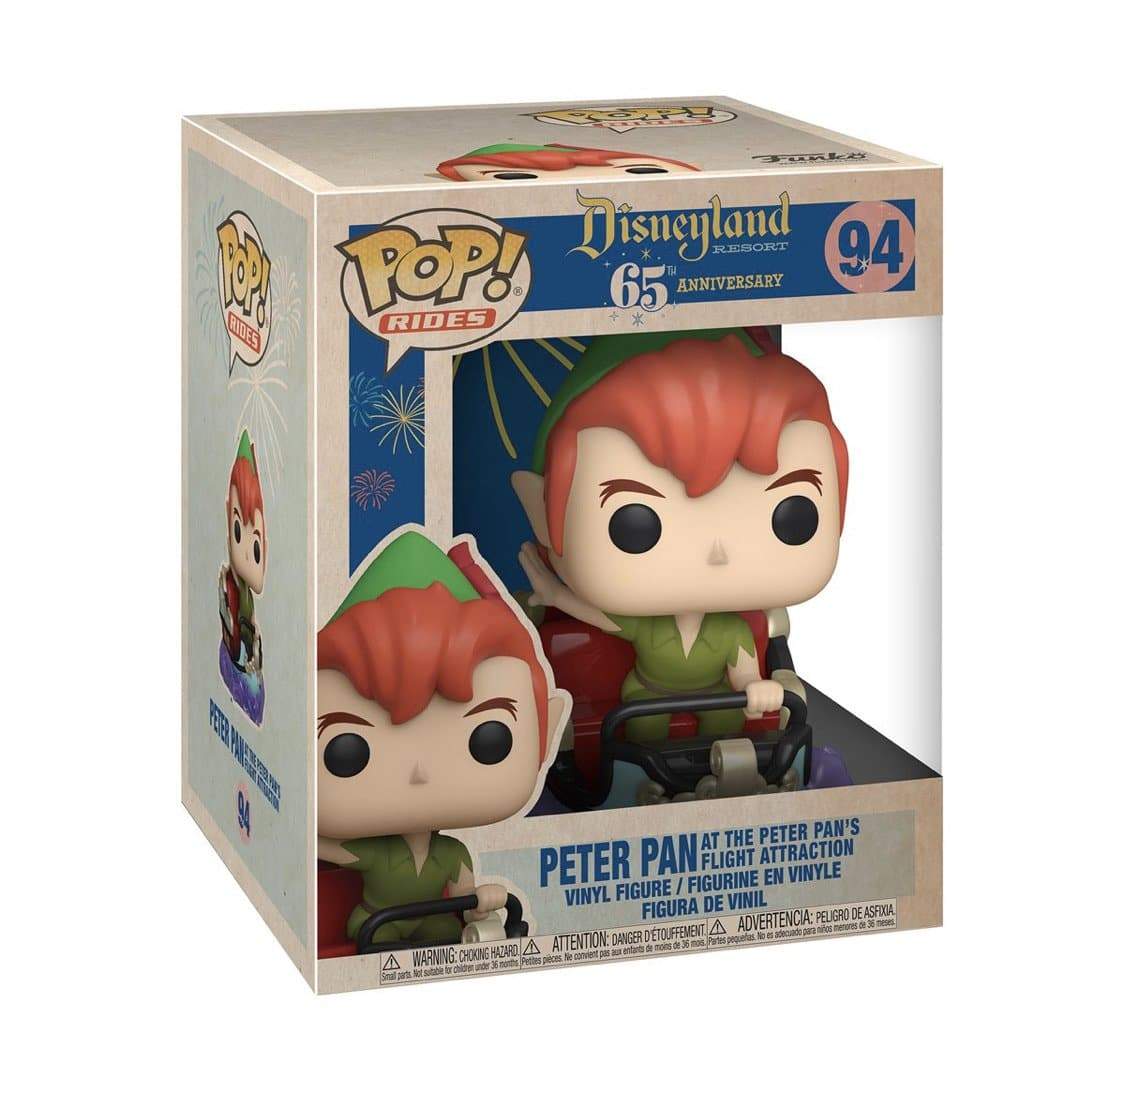 Peter Pan at the Peter Pan's Flight Attraction #94 Funko Pop! Disneyla